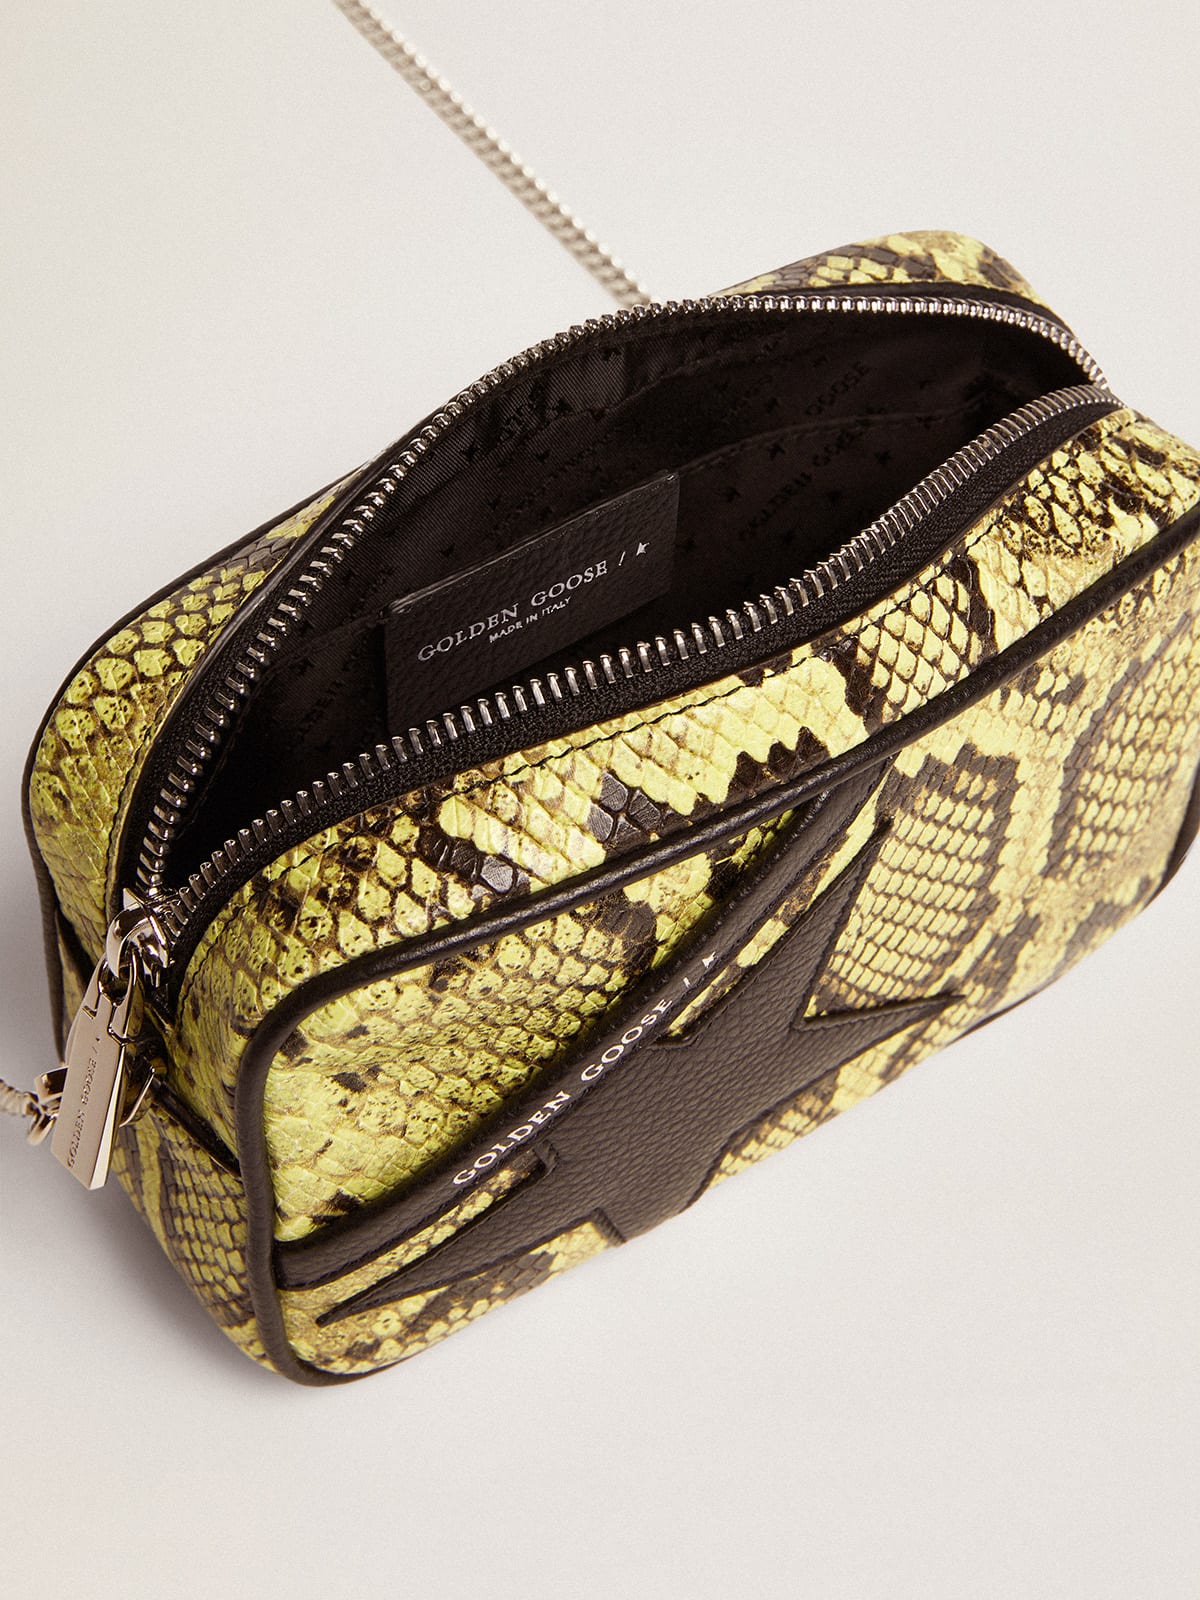 Golden Goose - Borsa Mini Star Bag in pelle con stampa pitonata color lime e stella in pelle nera in 